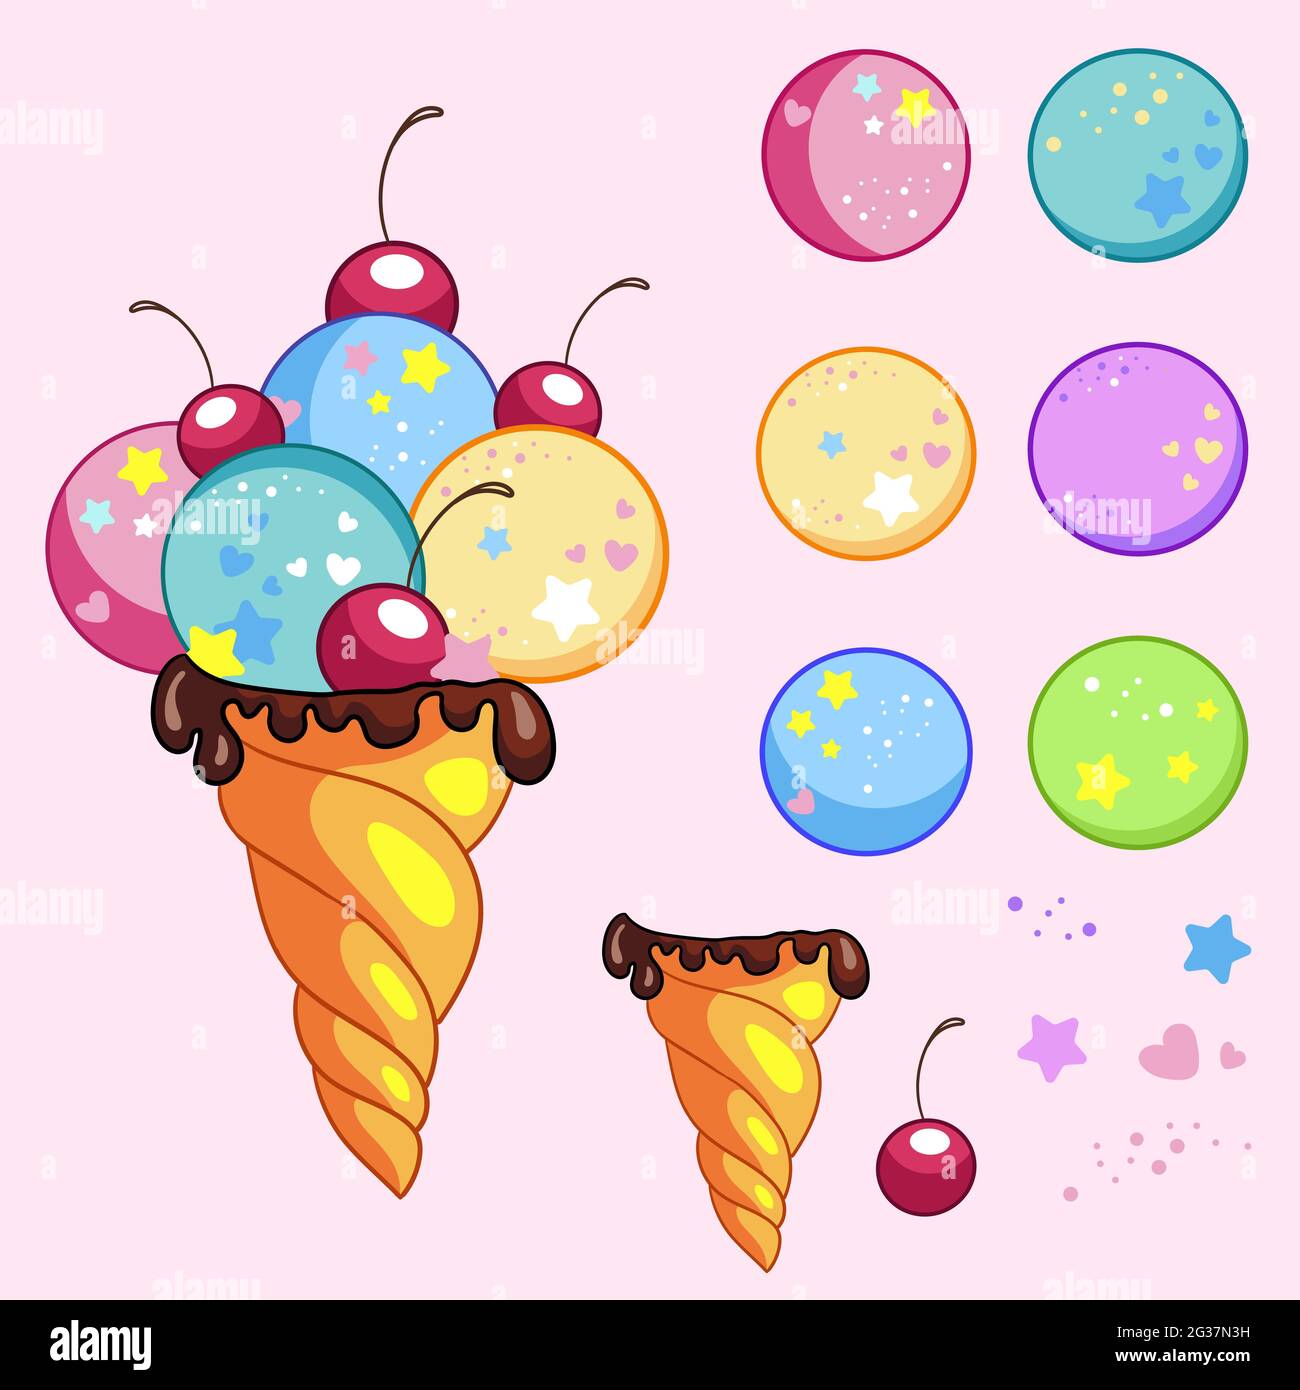 Das süße leckere Eis-Konus-Creator-Set umfasst Waffelkegel, Eiskugeln, Kirsche, Konfetti. Vektorgrafik Cartoon isolierte Illustration. Für Spiel, Druck, Stock Vektor